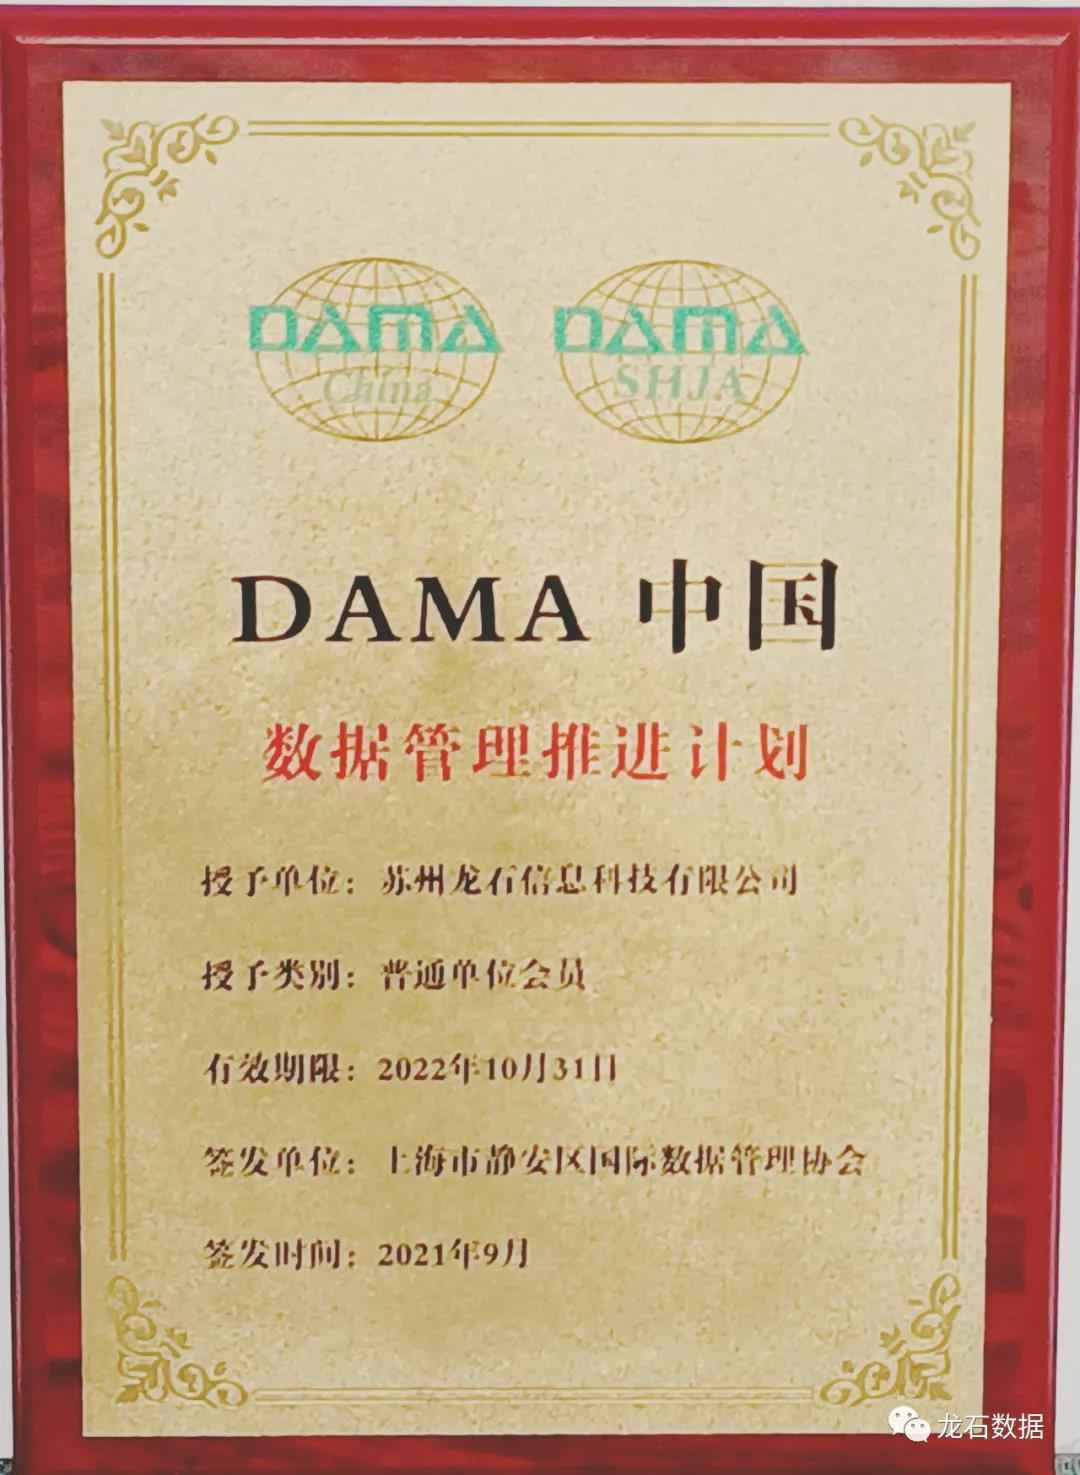 龙石数据正式成为“DAMA中国”数据管理推进计划单位会员